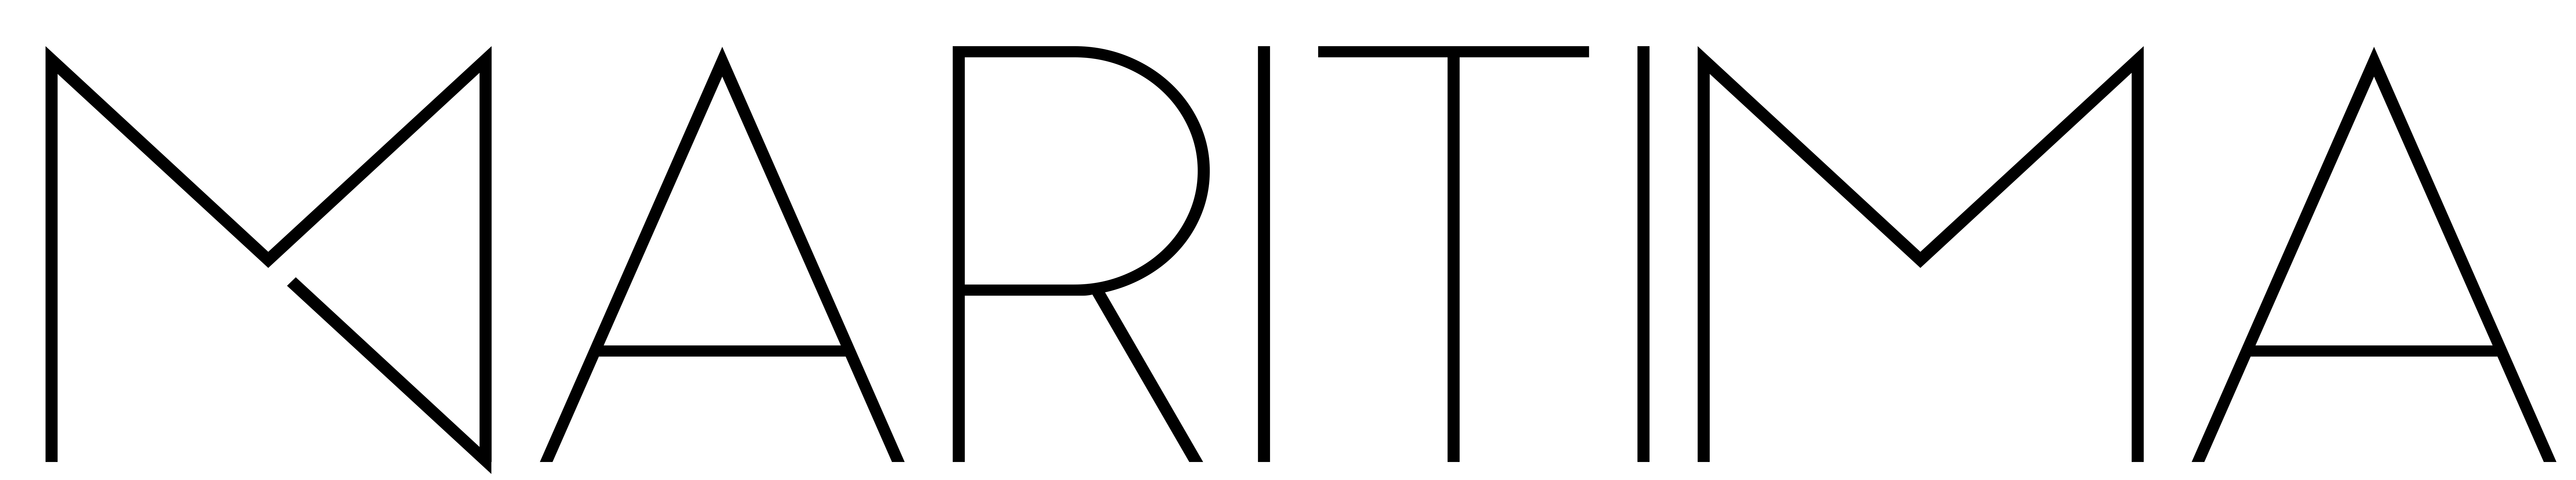 Maritima bokföringsbyrå logo M